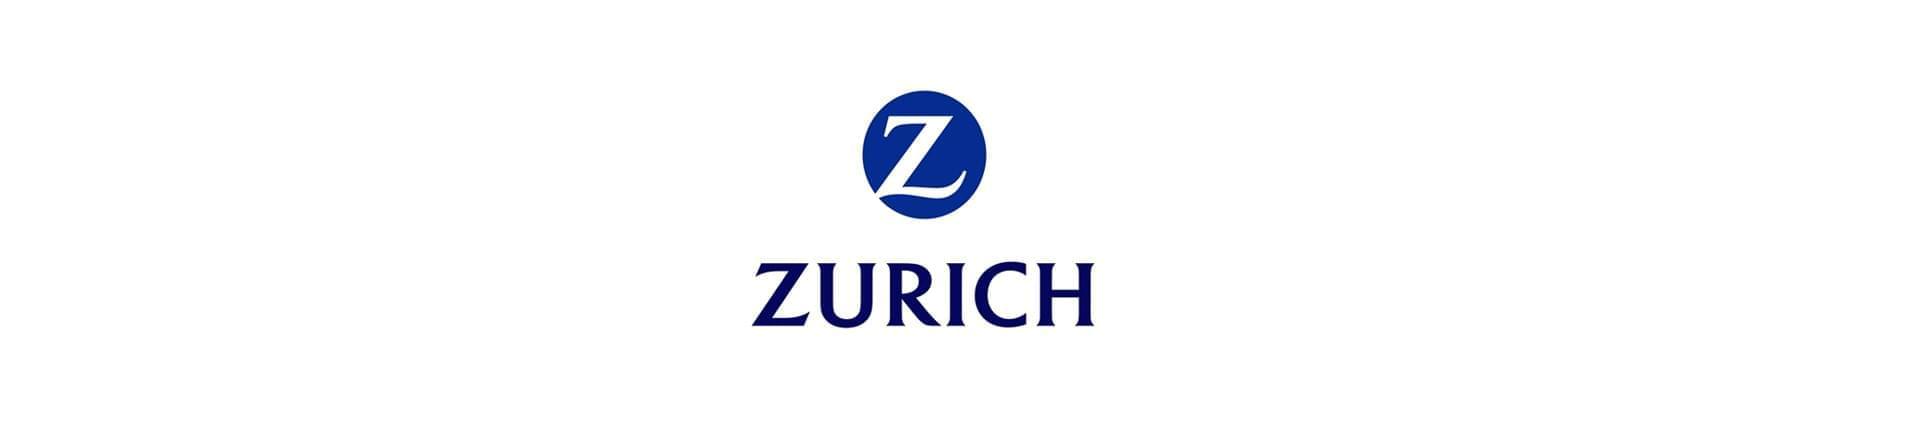 Zurich Logo - Jobs & Careers at Zurich Insurance | Vercida